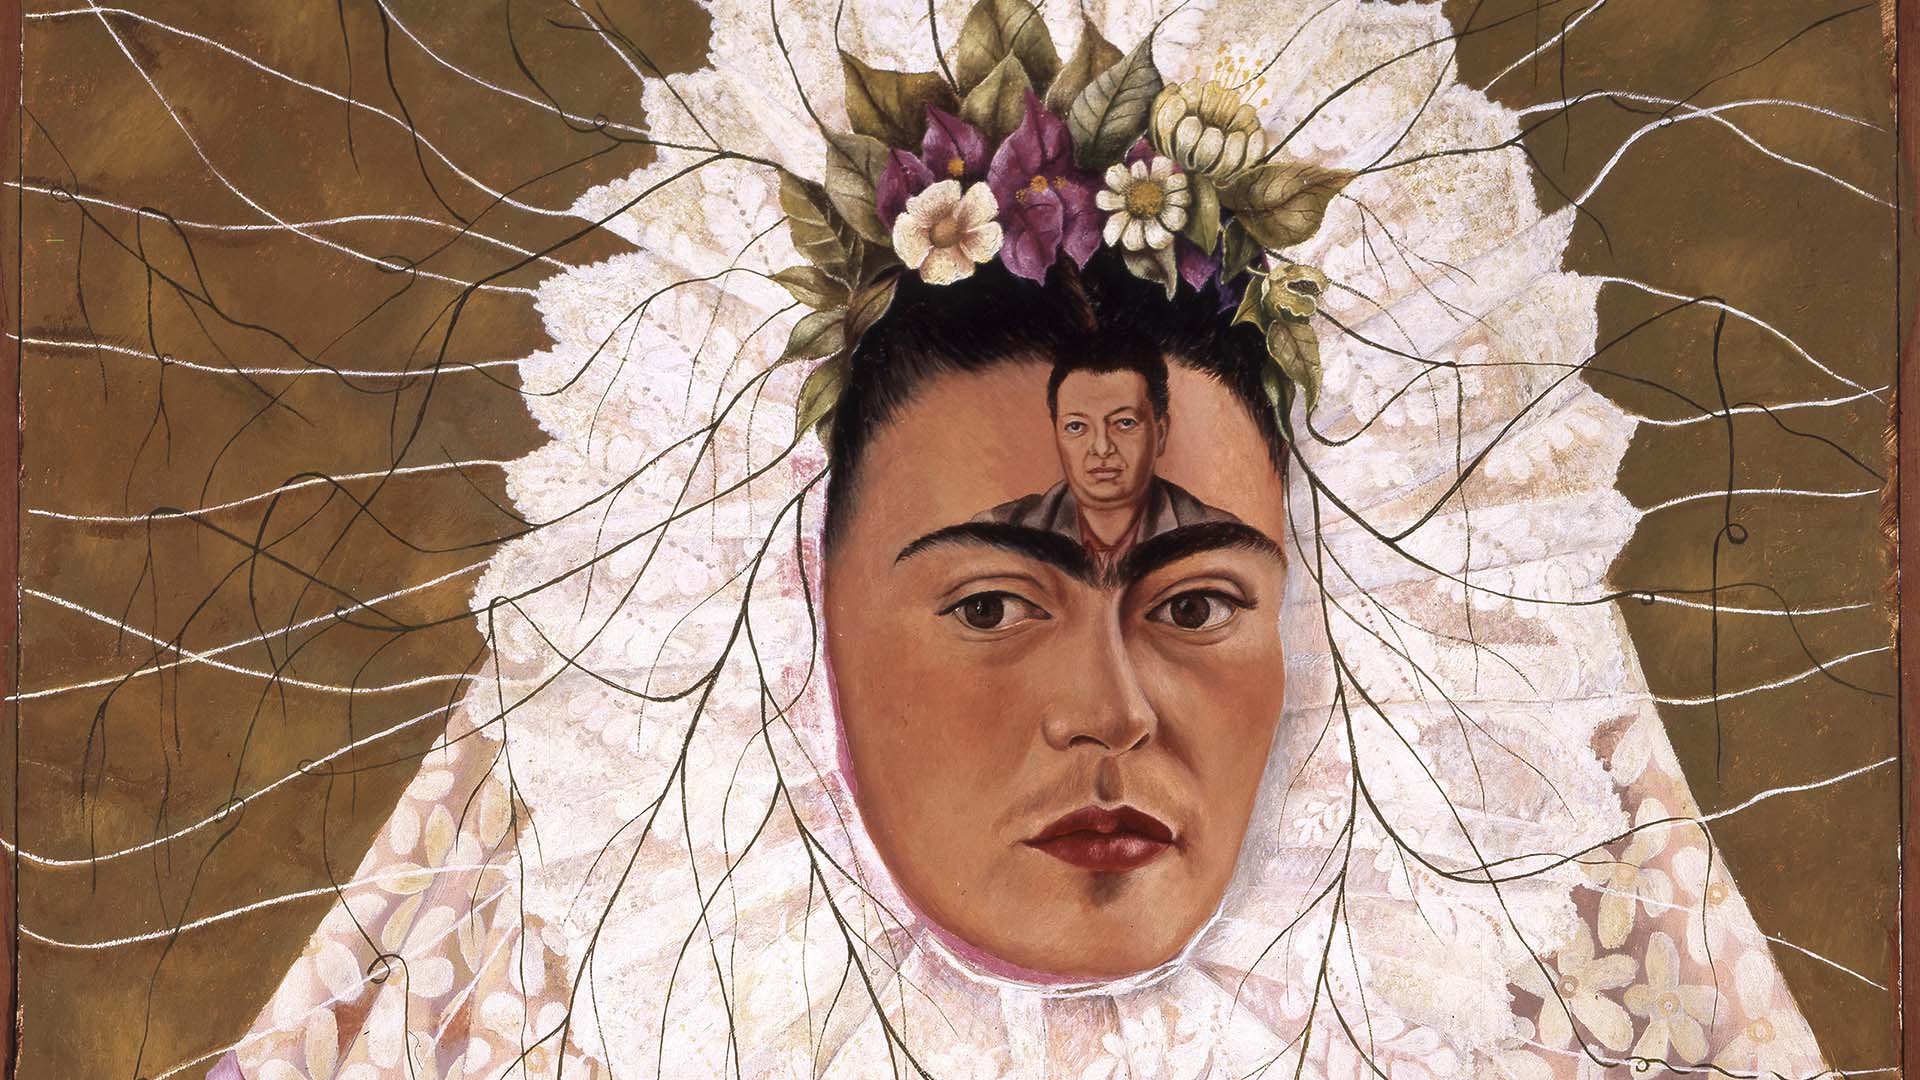 Una exhibición masiva de Frida Kahlo, Diego Rivera y el modernismo mexicano llegará a Australia en 2023